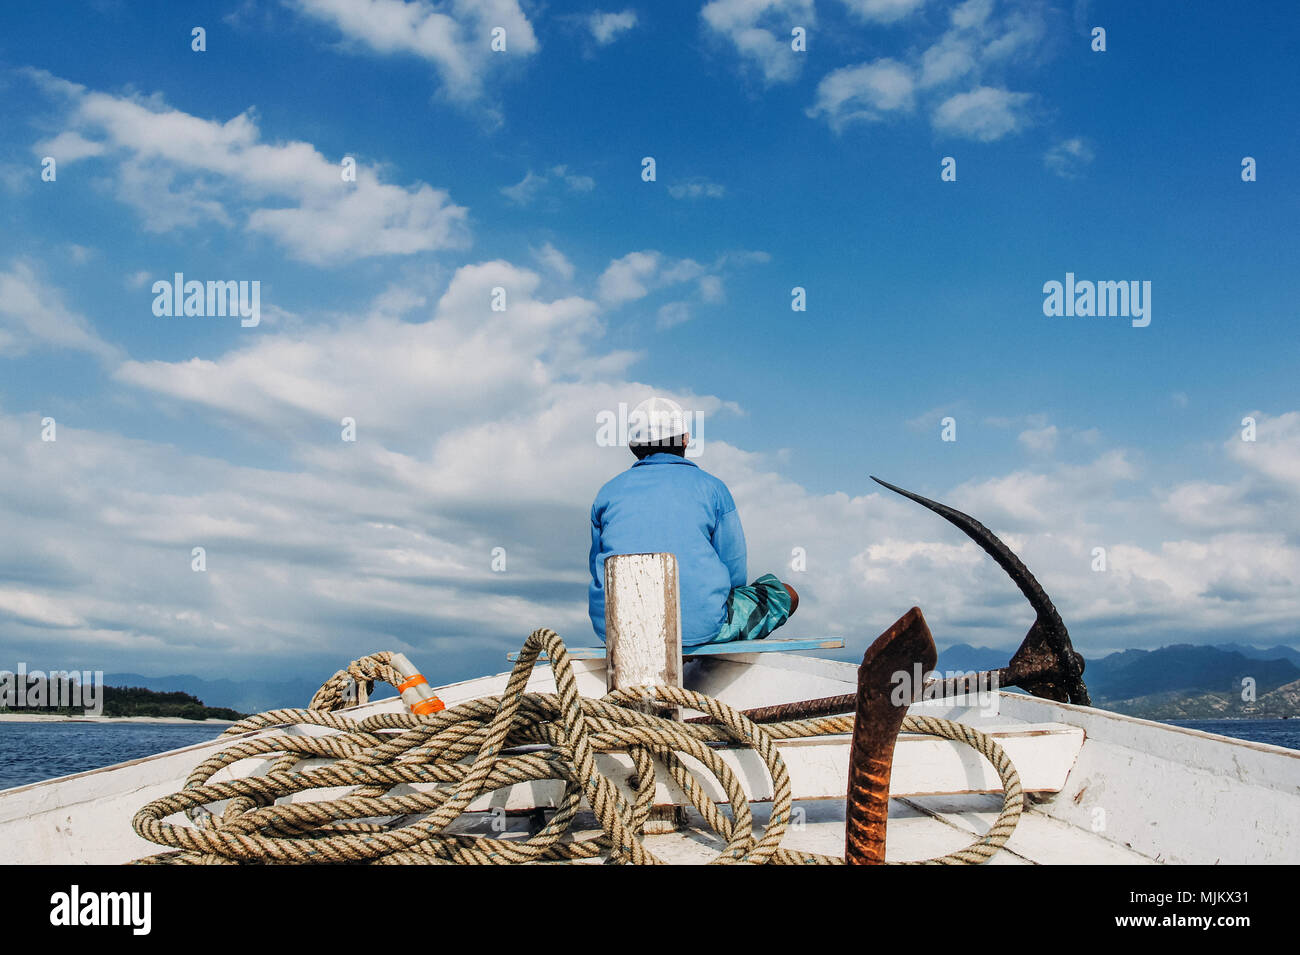 Pêcheur s'asseoir sur le nez du bateau de pêche avec l'ancre et la corde Banque D'Images